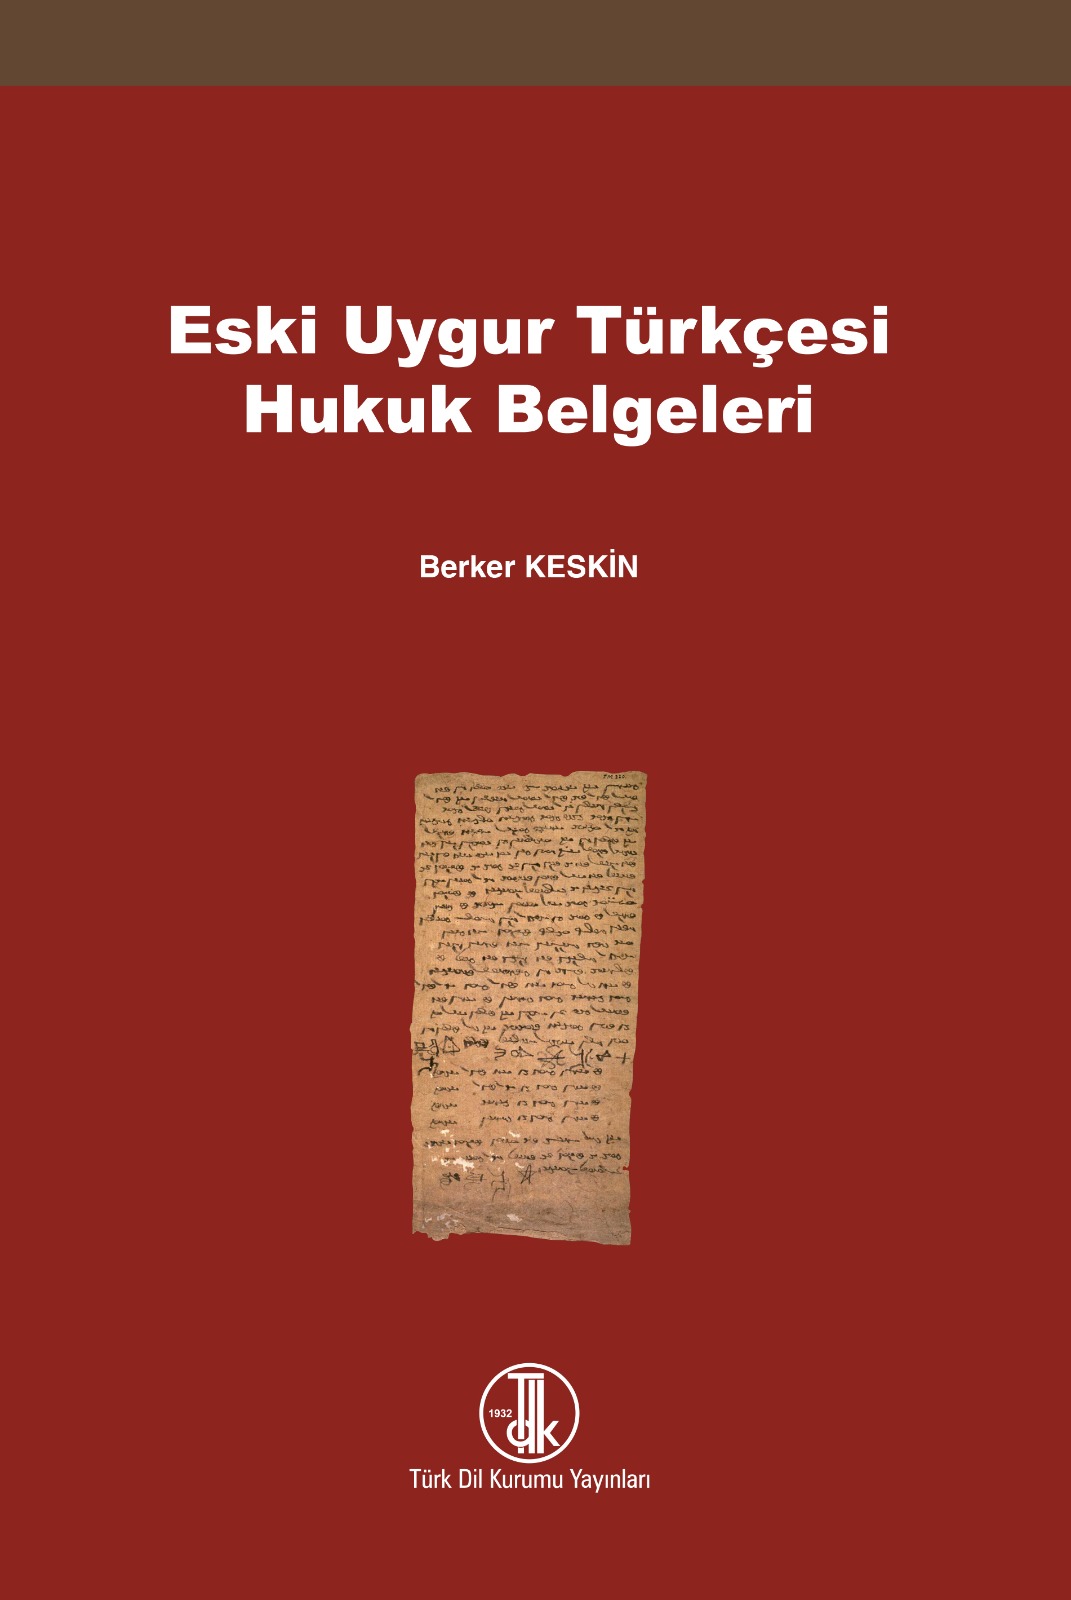 Eski Uygur Türkçesi Hukuk Belgeleri, 2022